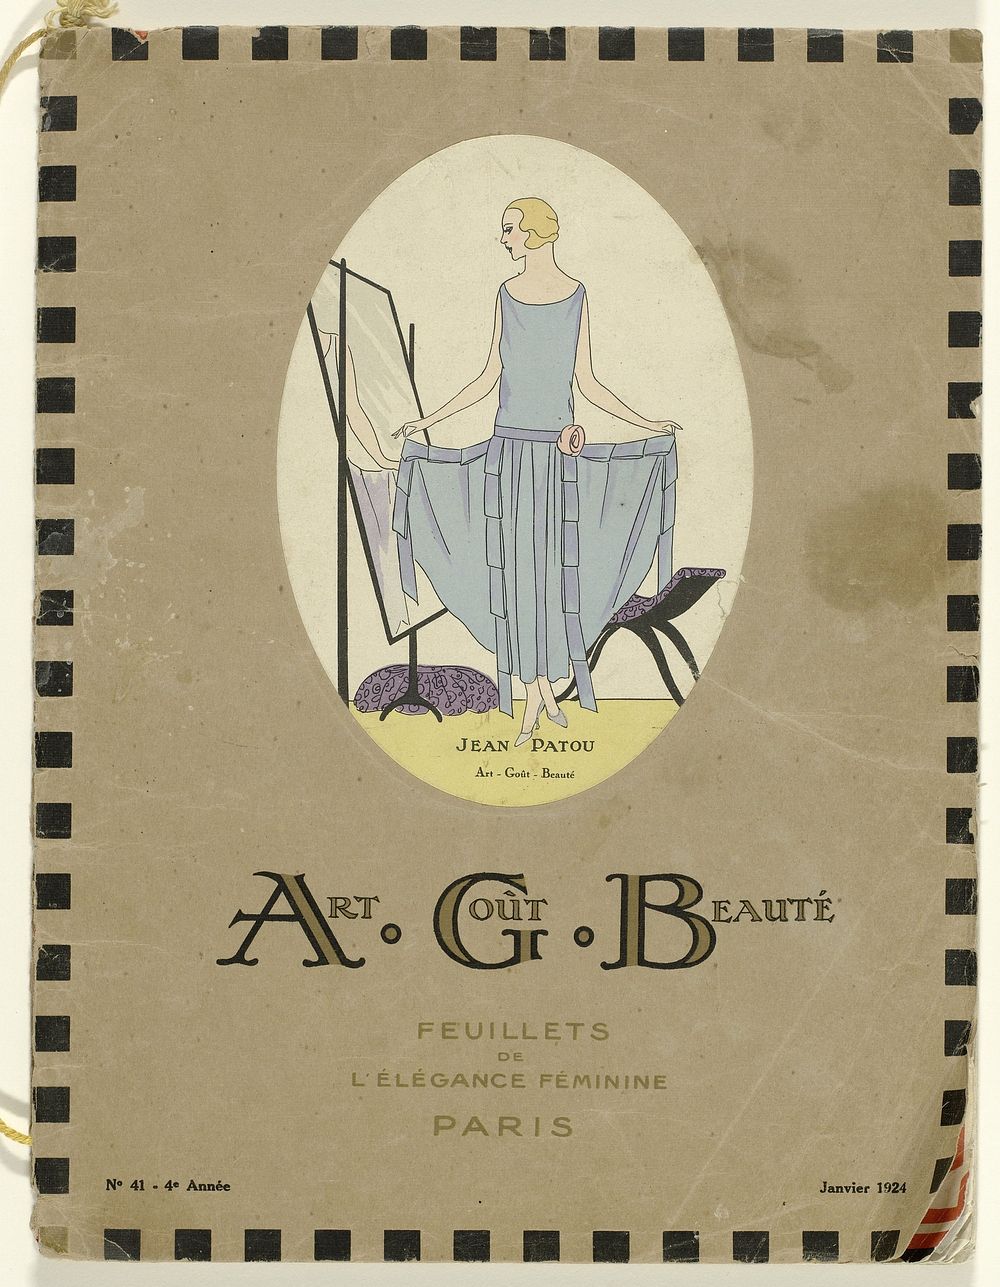 Advertentie voor stoffen van de stoffenfabrikant (1928) fashion illustration in high resolution.  